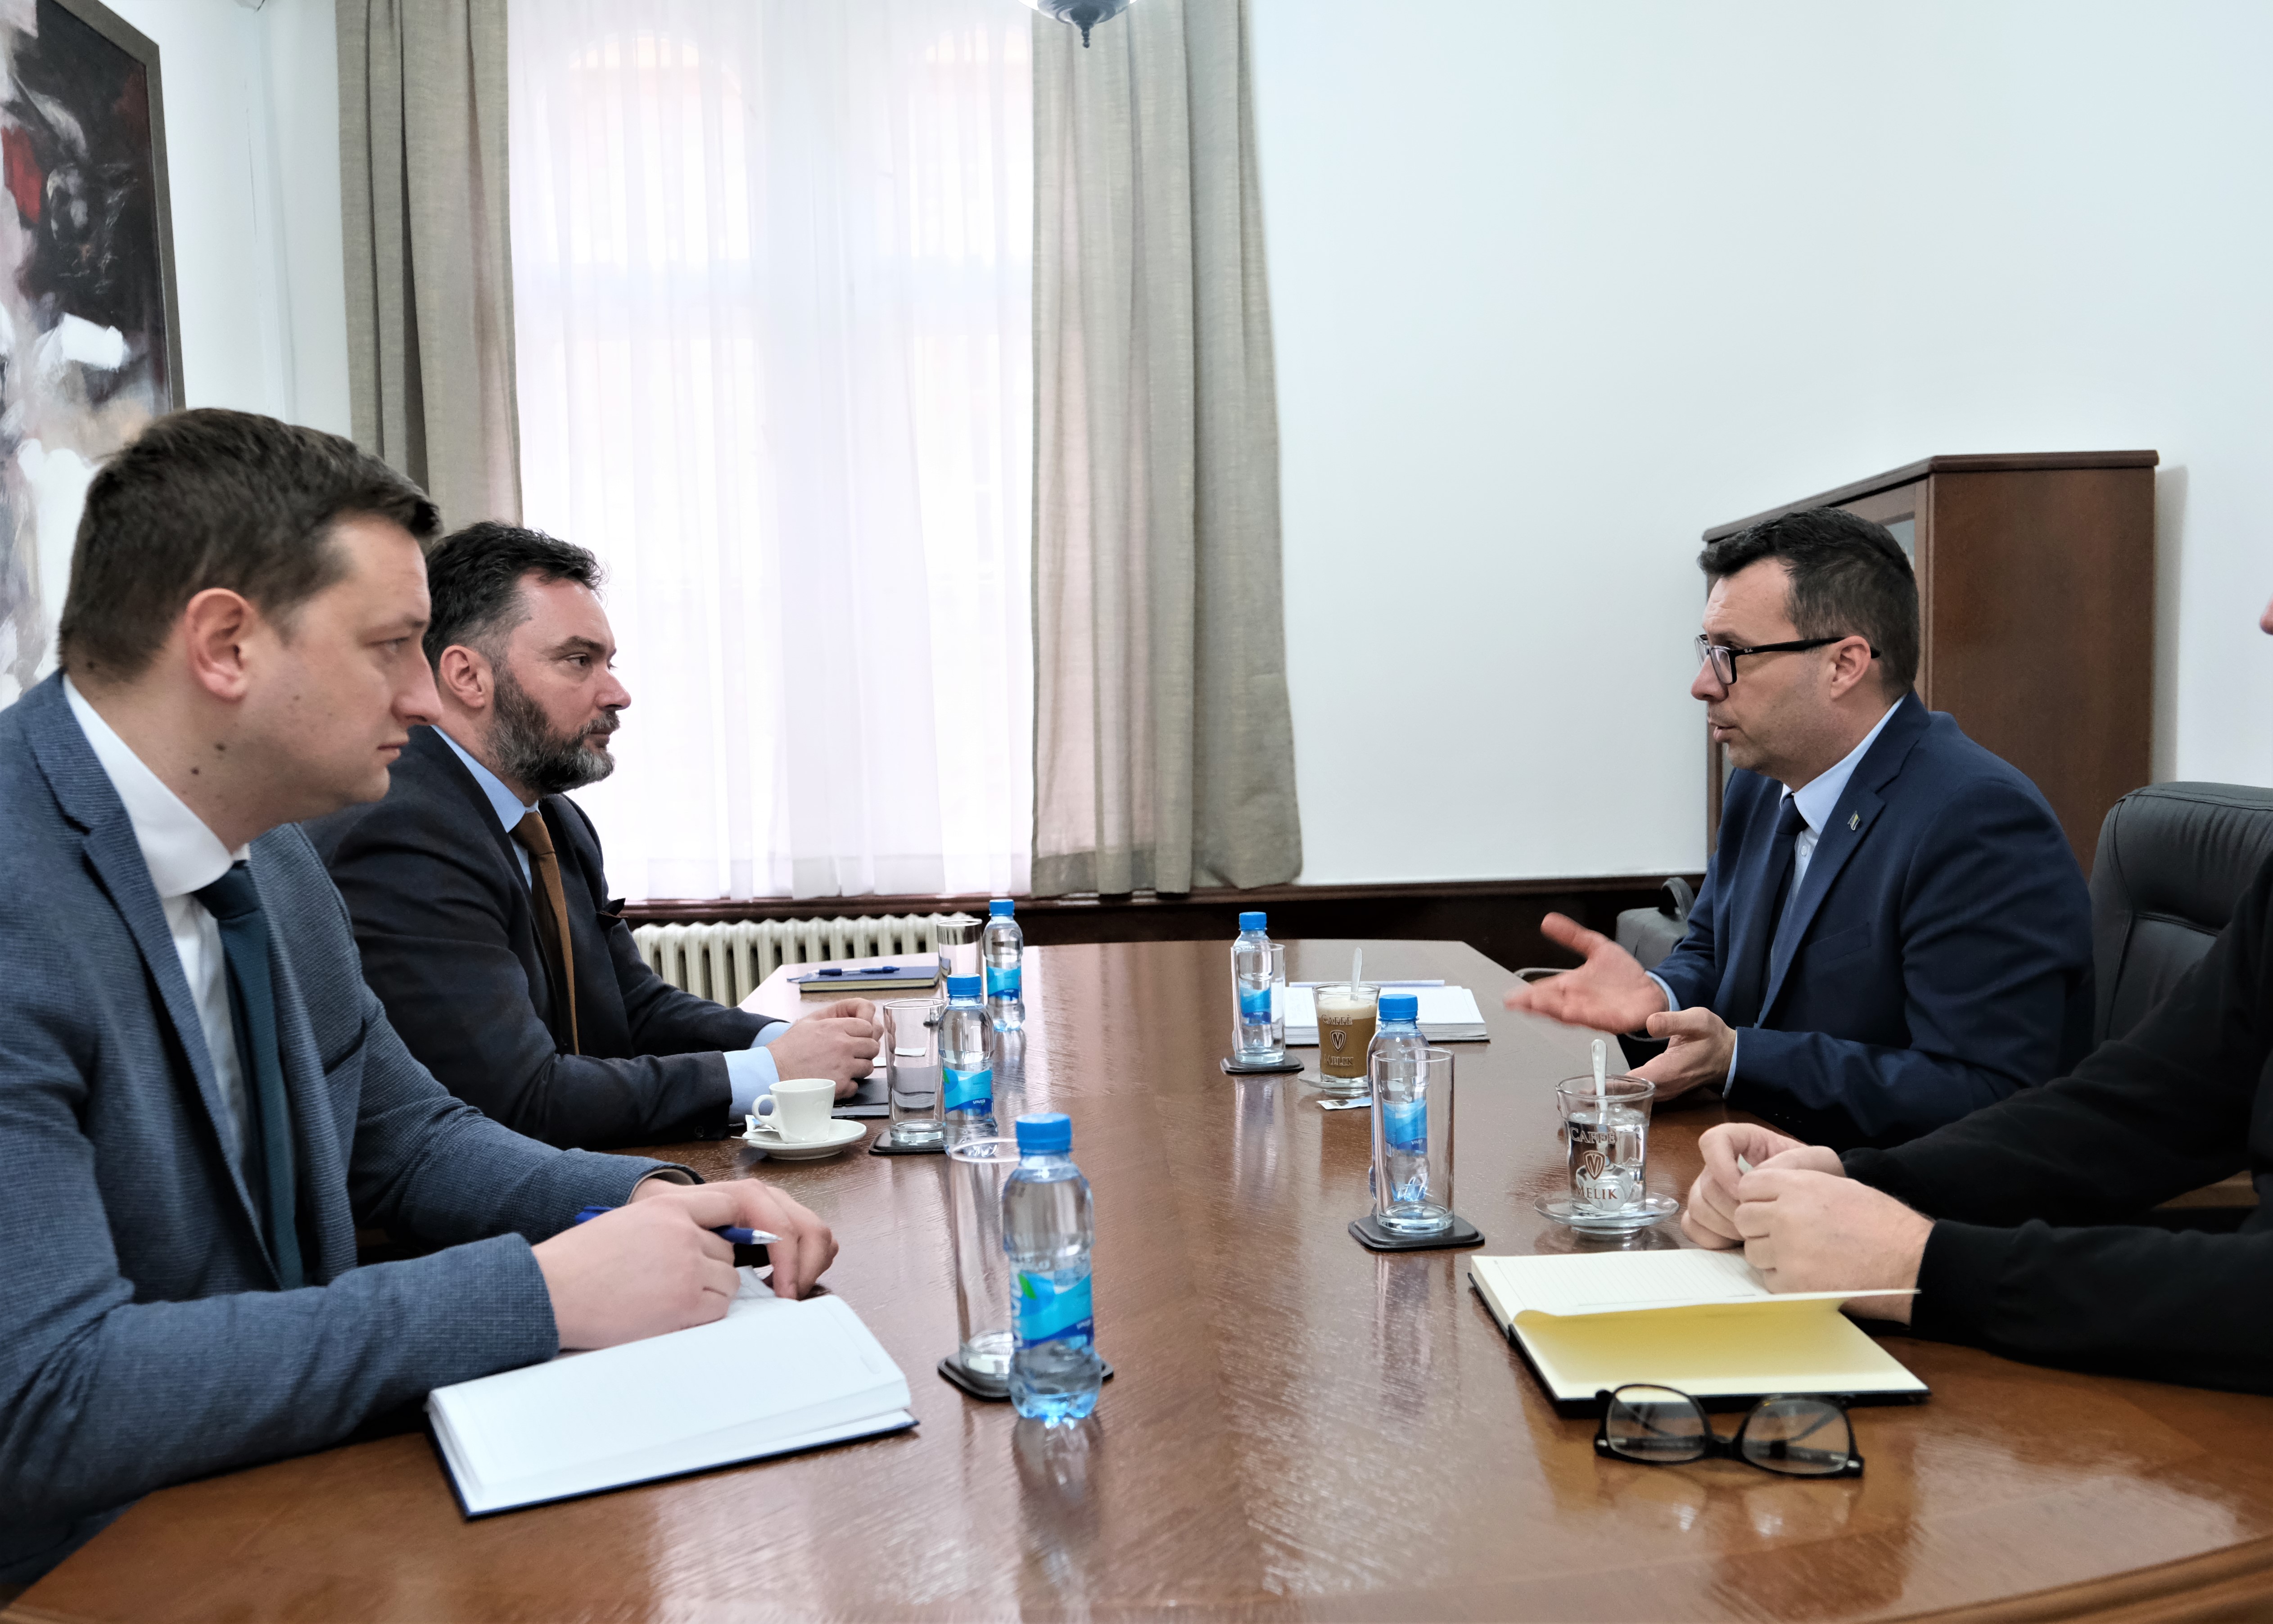 Picture for Министри Кошарац и Џиндић: Афирмисати сарадњу у циљу ефикасније проходности одлука